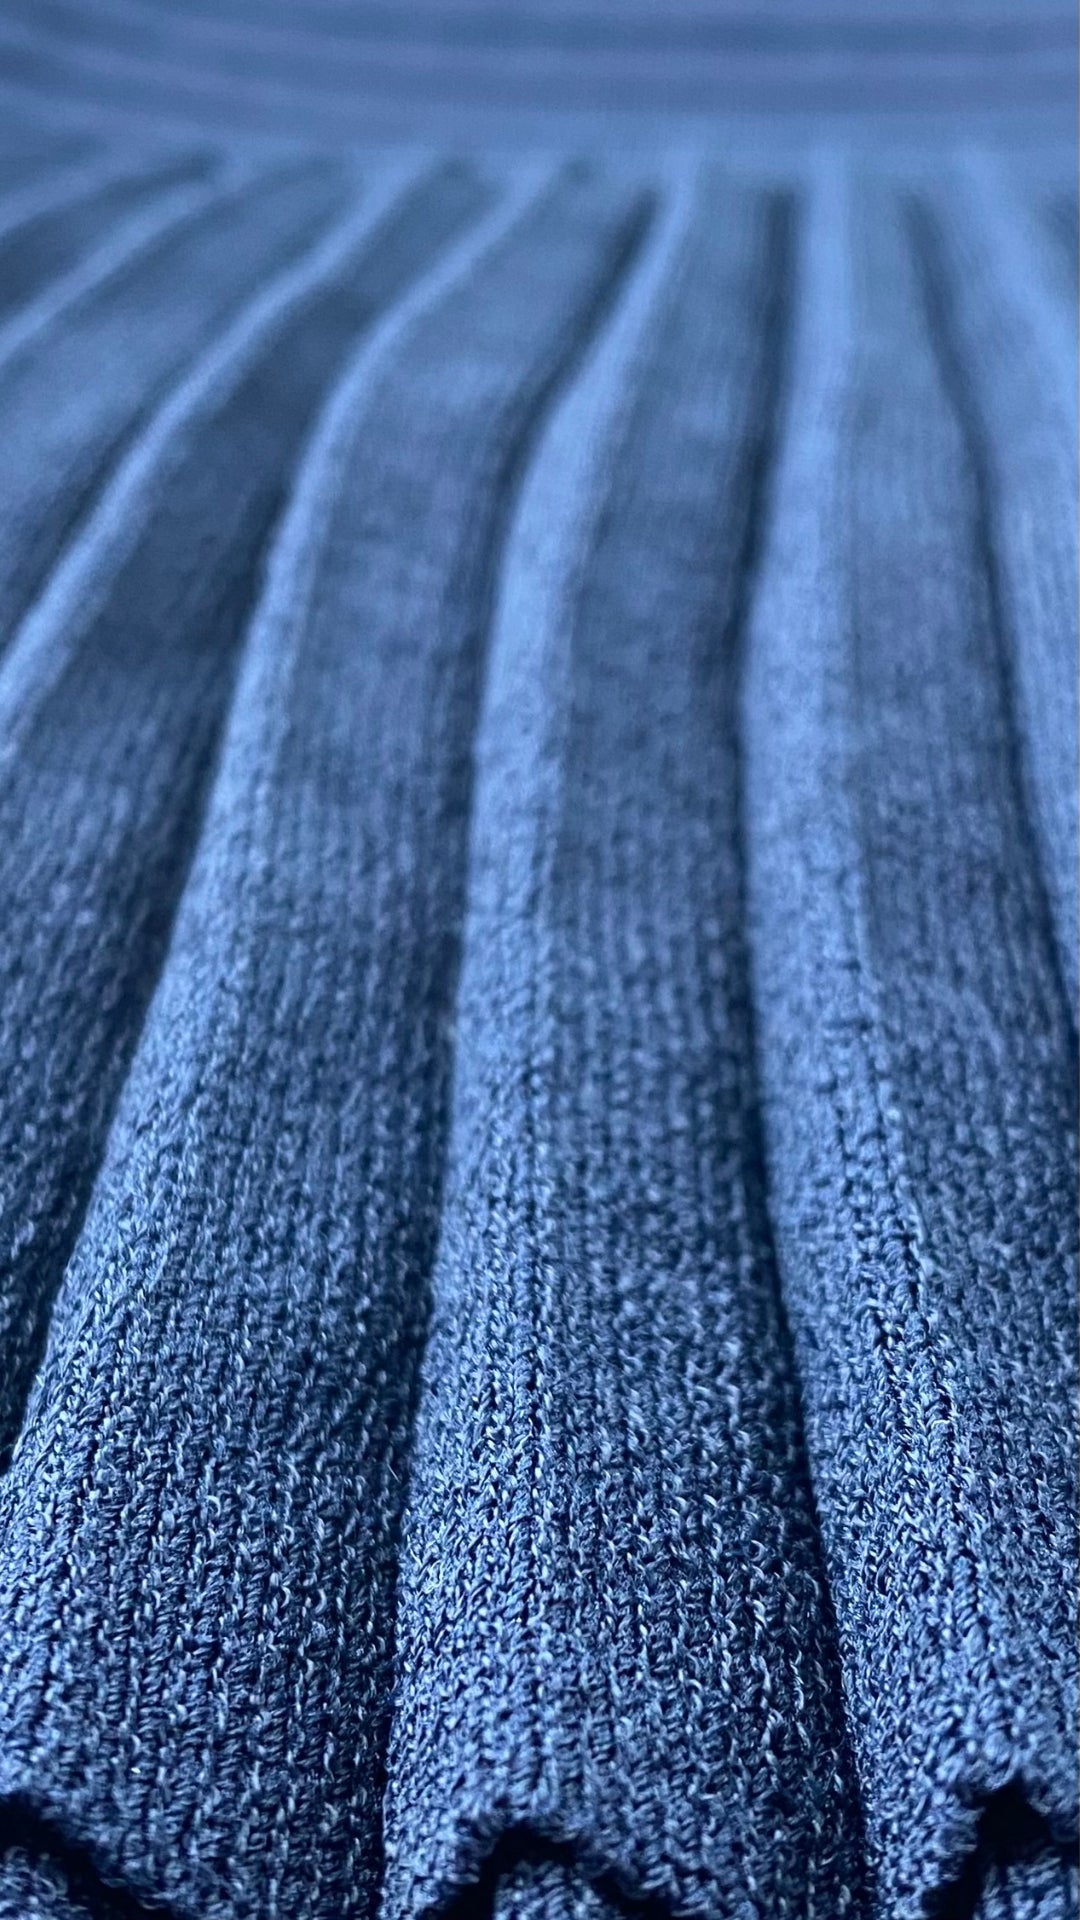 Robe marine en tricot à l'ourlet plissé Michael Kors, taille large. Vue du plissé.